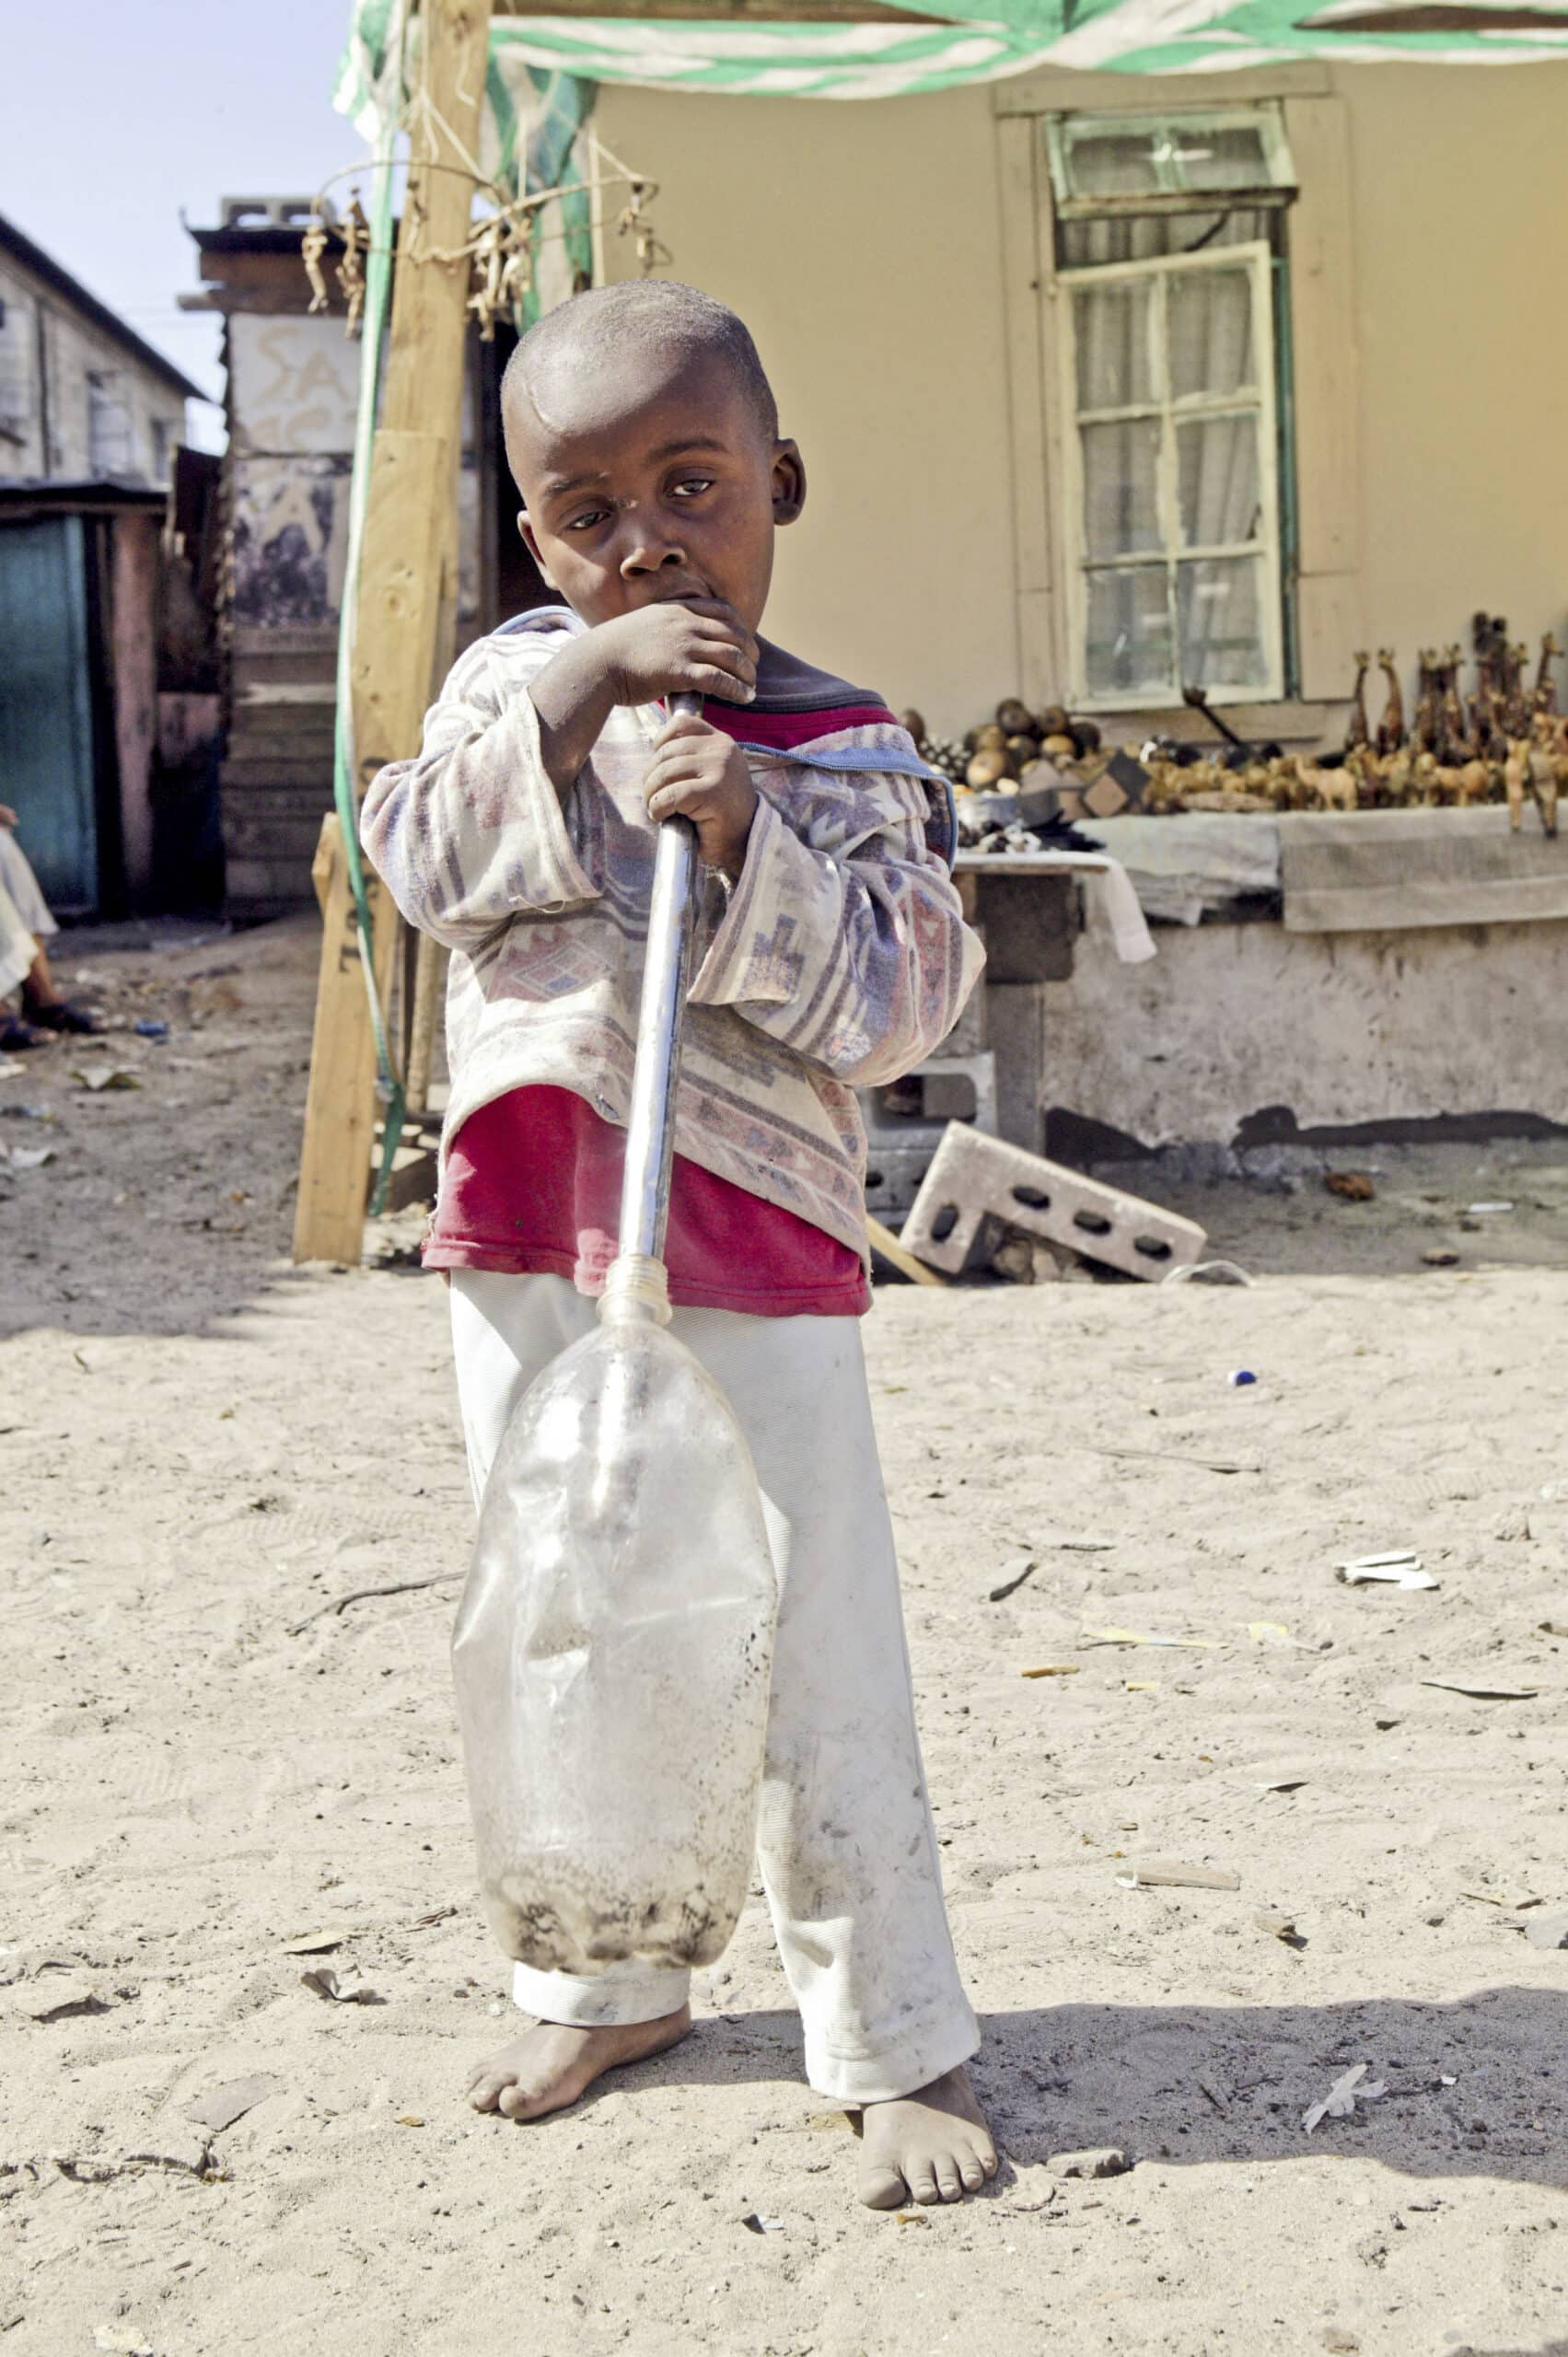 Ein kleiner Junge steht barfuß auf einem Sandboden und hält eine große Plastikflasche mit einem hindurchgesteckten Stock in der Hand. Im Hintergrund sind ein bescheidenes Haus und verschiedene kleine Gegenstände auf einem Tisch angeordnet. © Fotografie Tomas Rodriguez